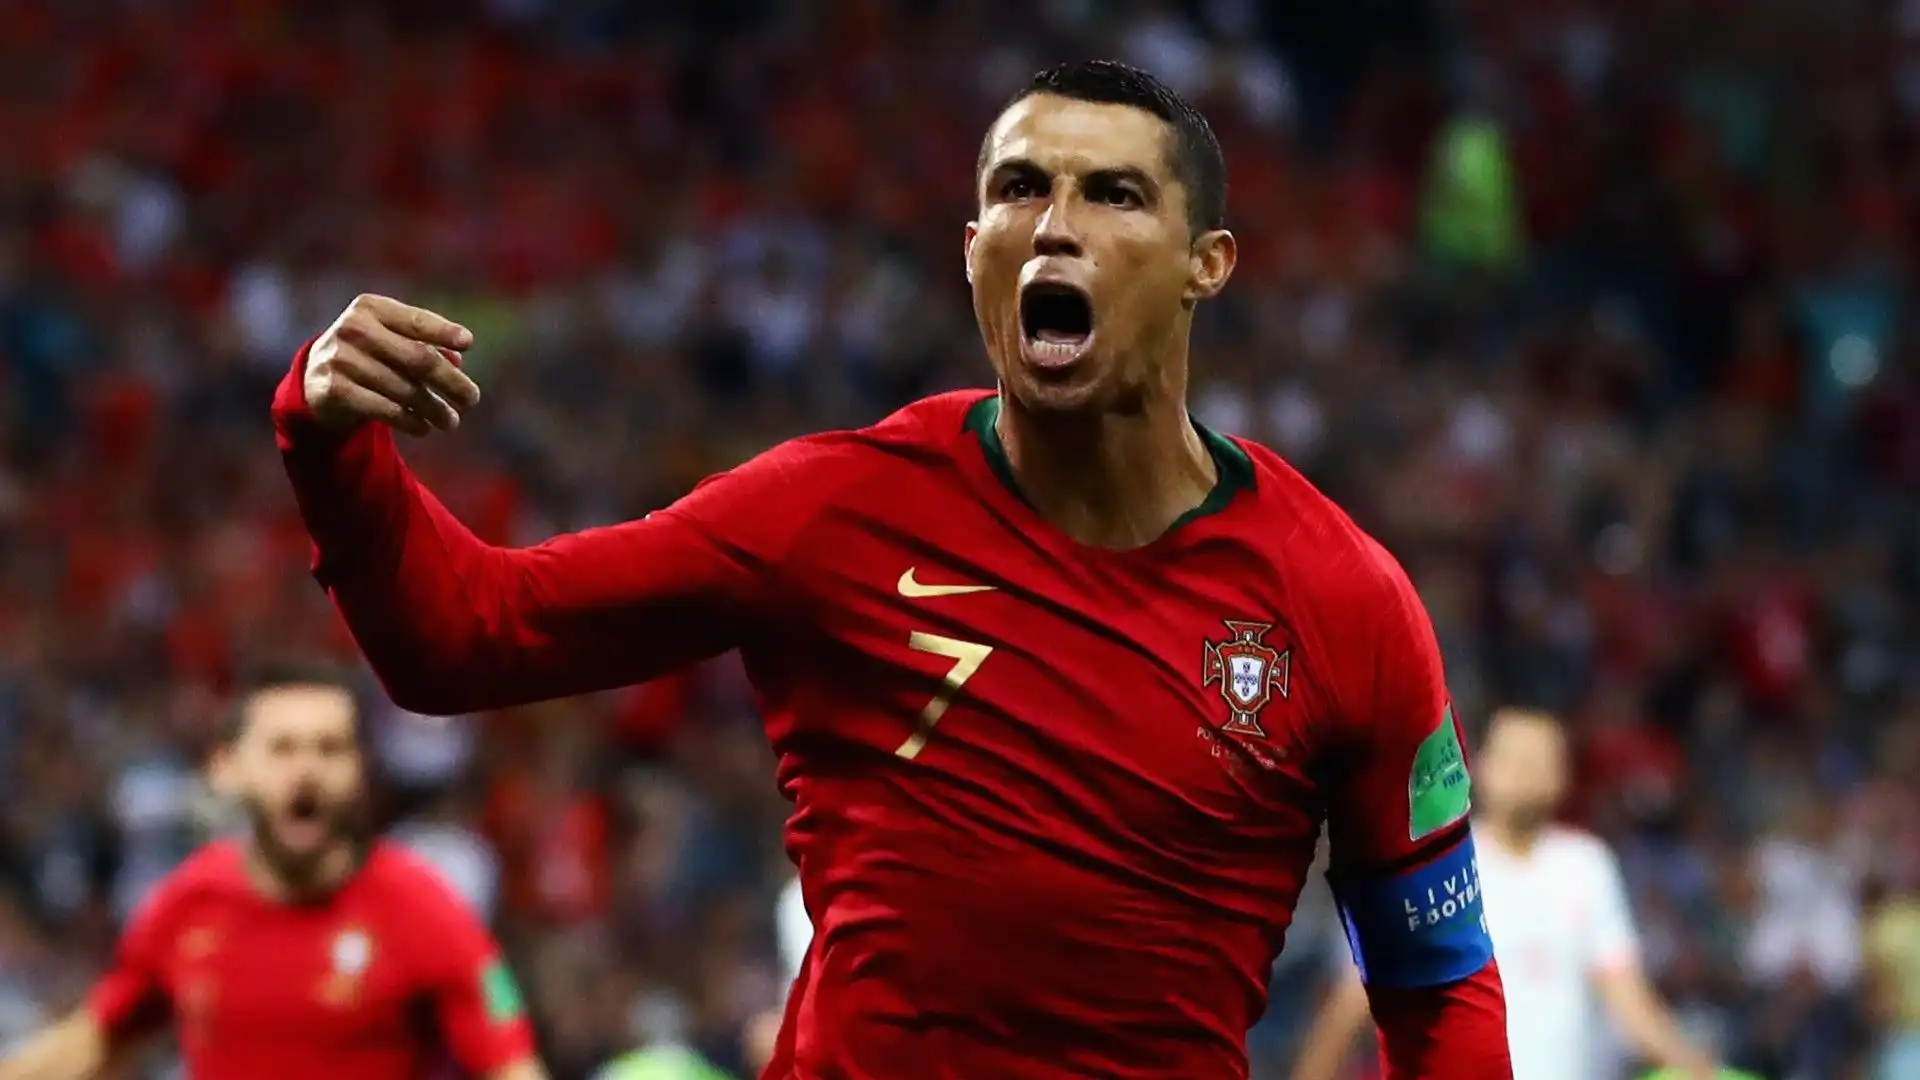 Portogallo-Spagna 3-3 del 15 giugno 2018